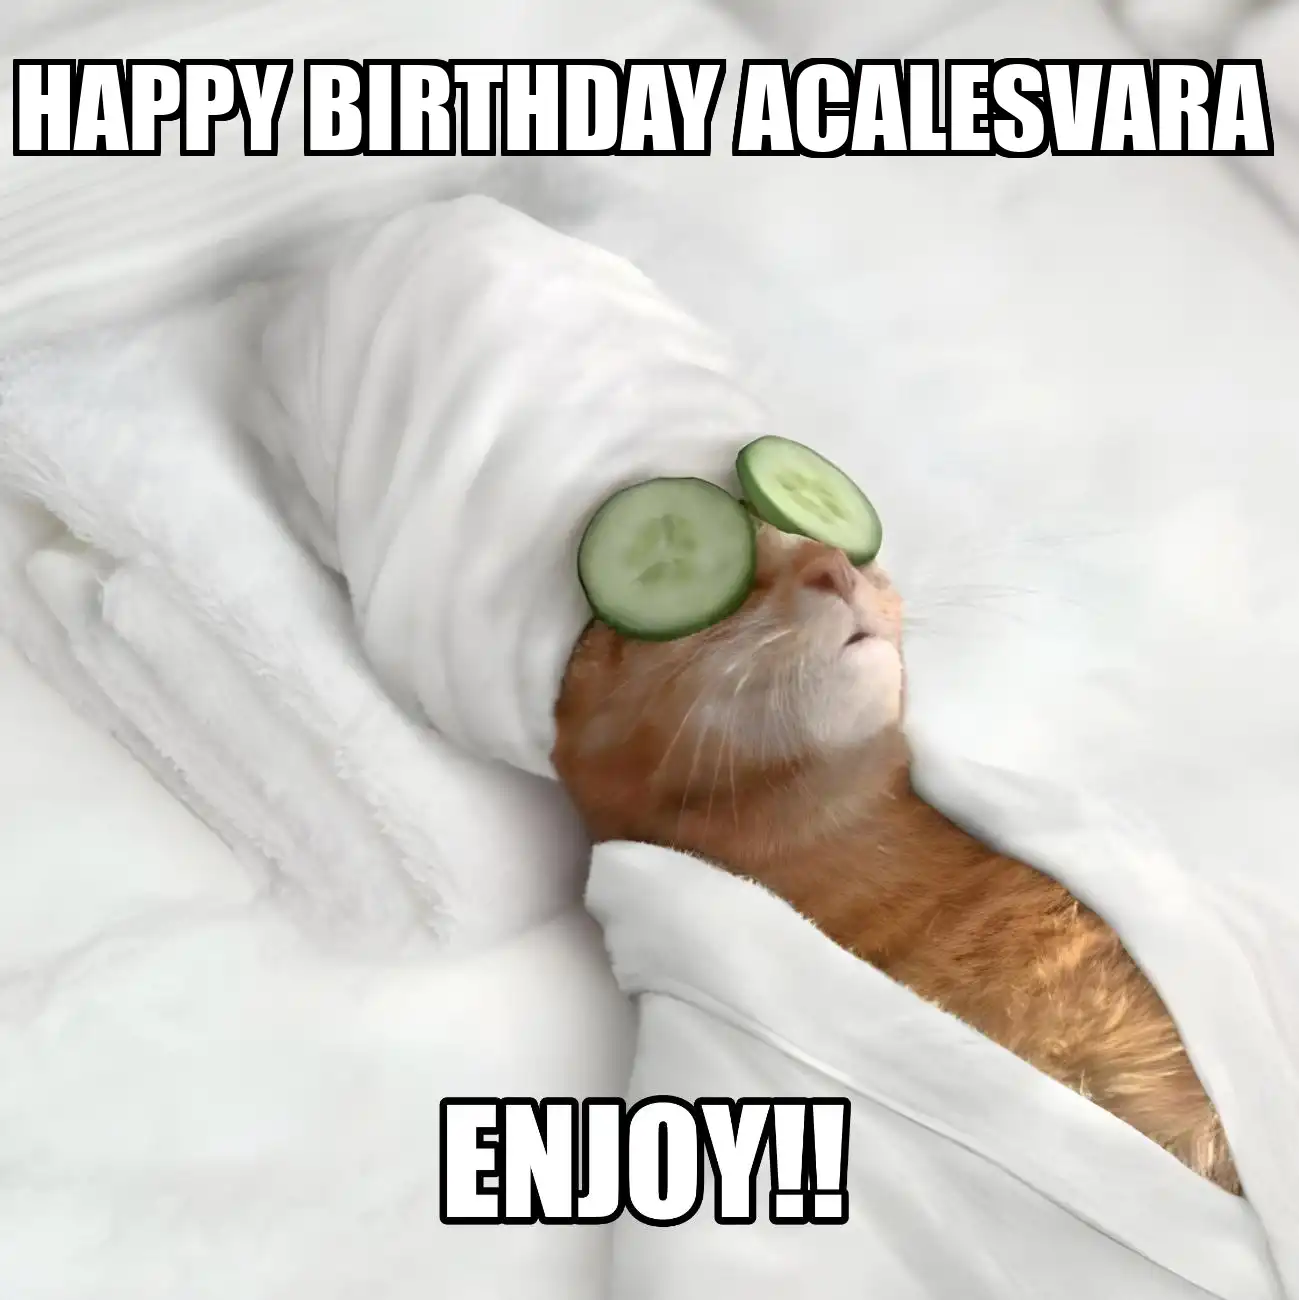 Happy Birthday Acalesvara Enjoy Cat Meme